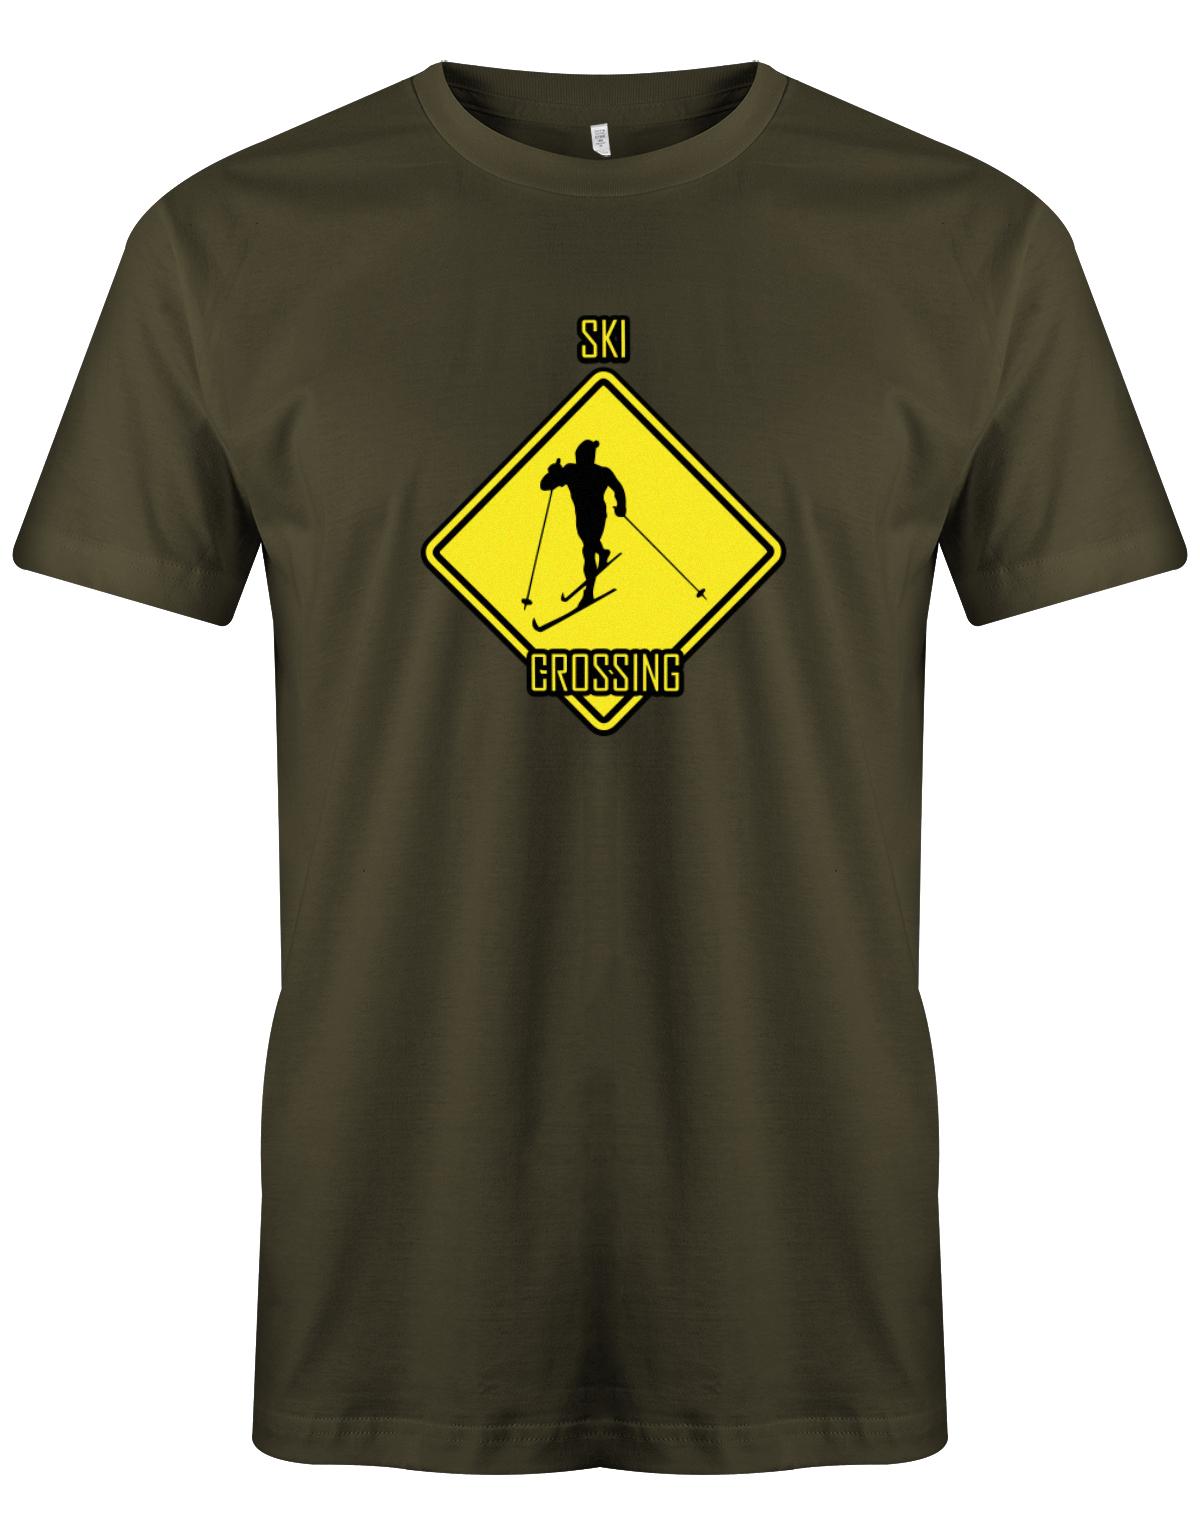 Ski-Crossing-Skier-shirt-herren-Army